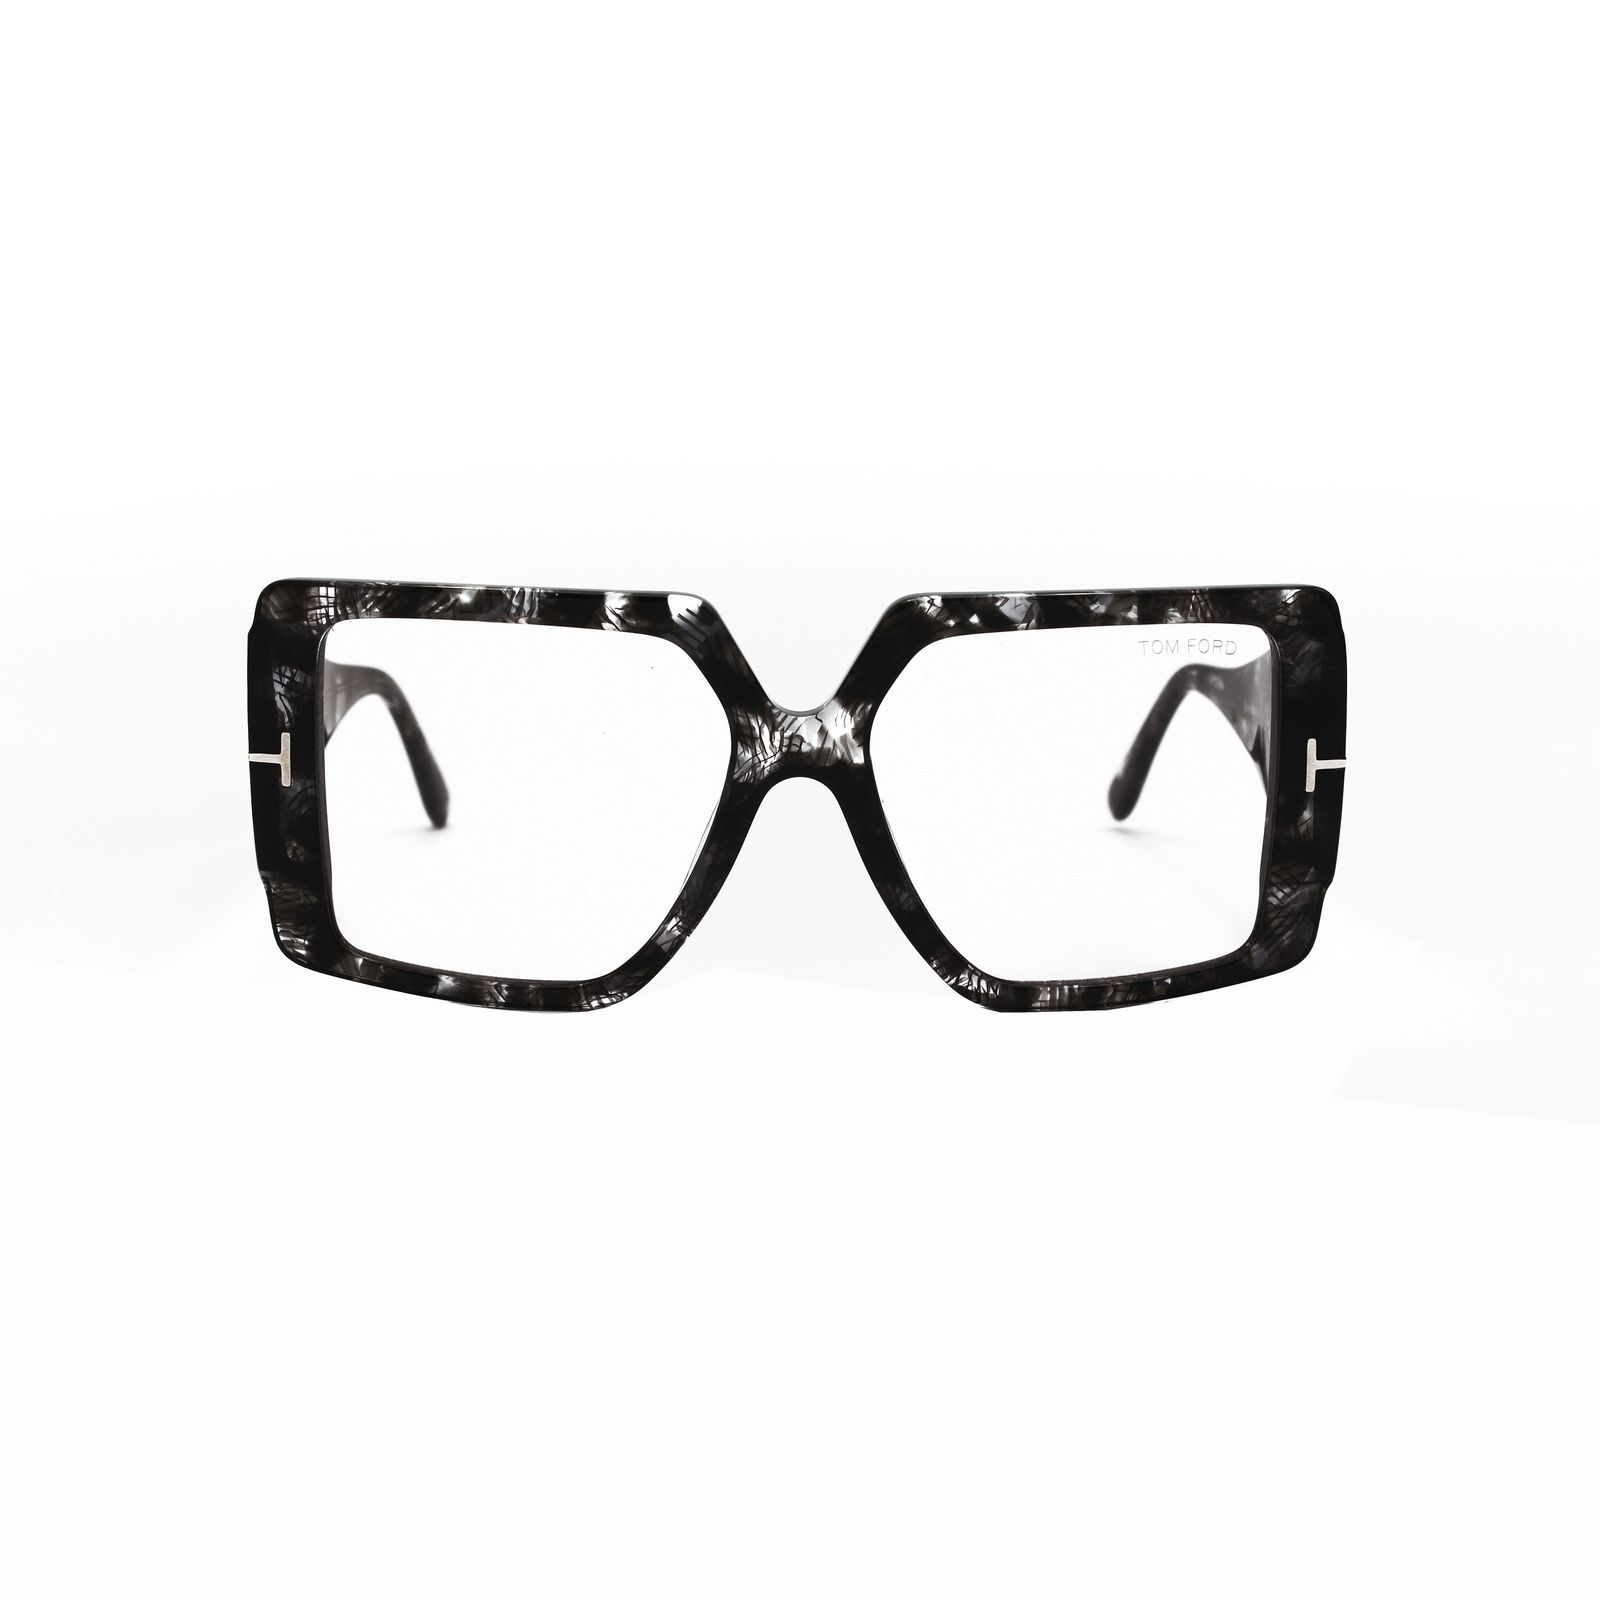 فریم عینک طبی تام فورد مدل  quinn tf790 052